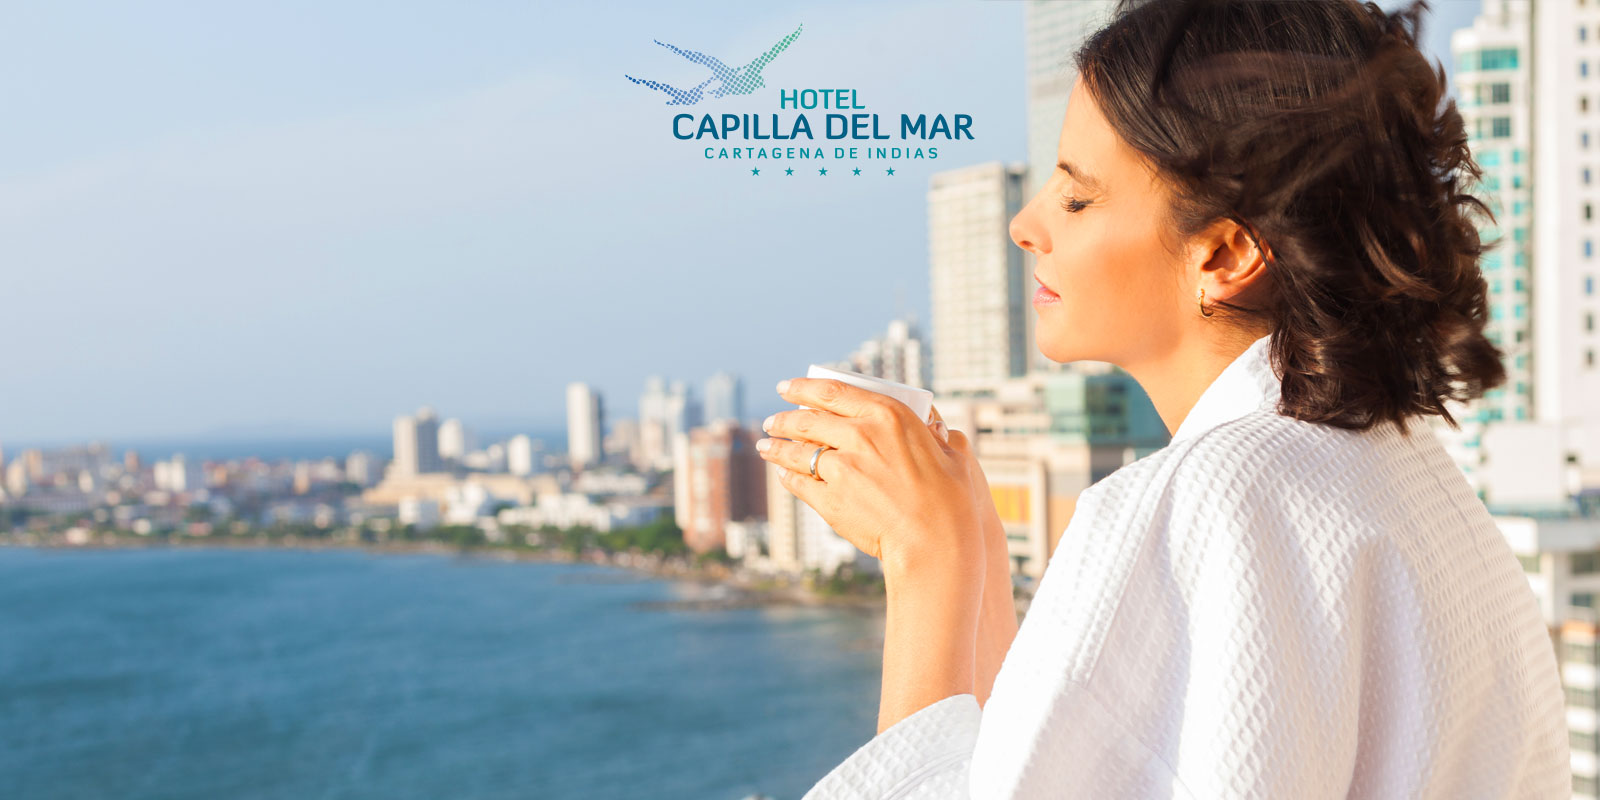 Hotel Capilla del Mar Cartagena de Indias